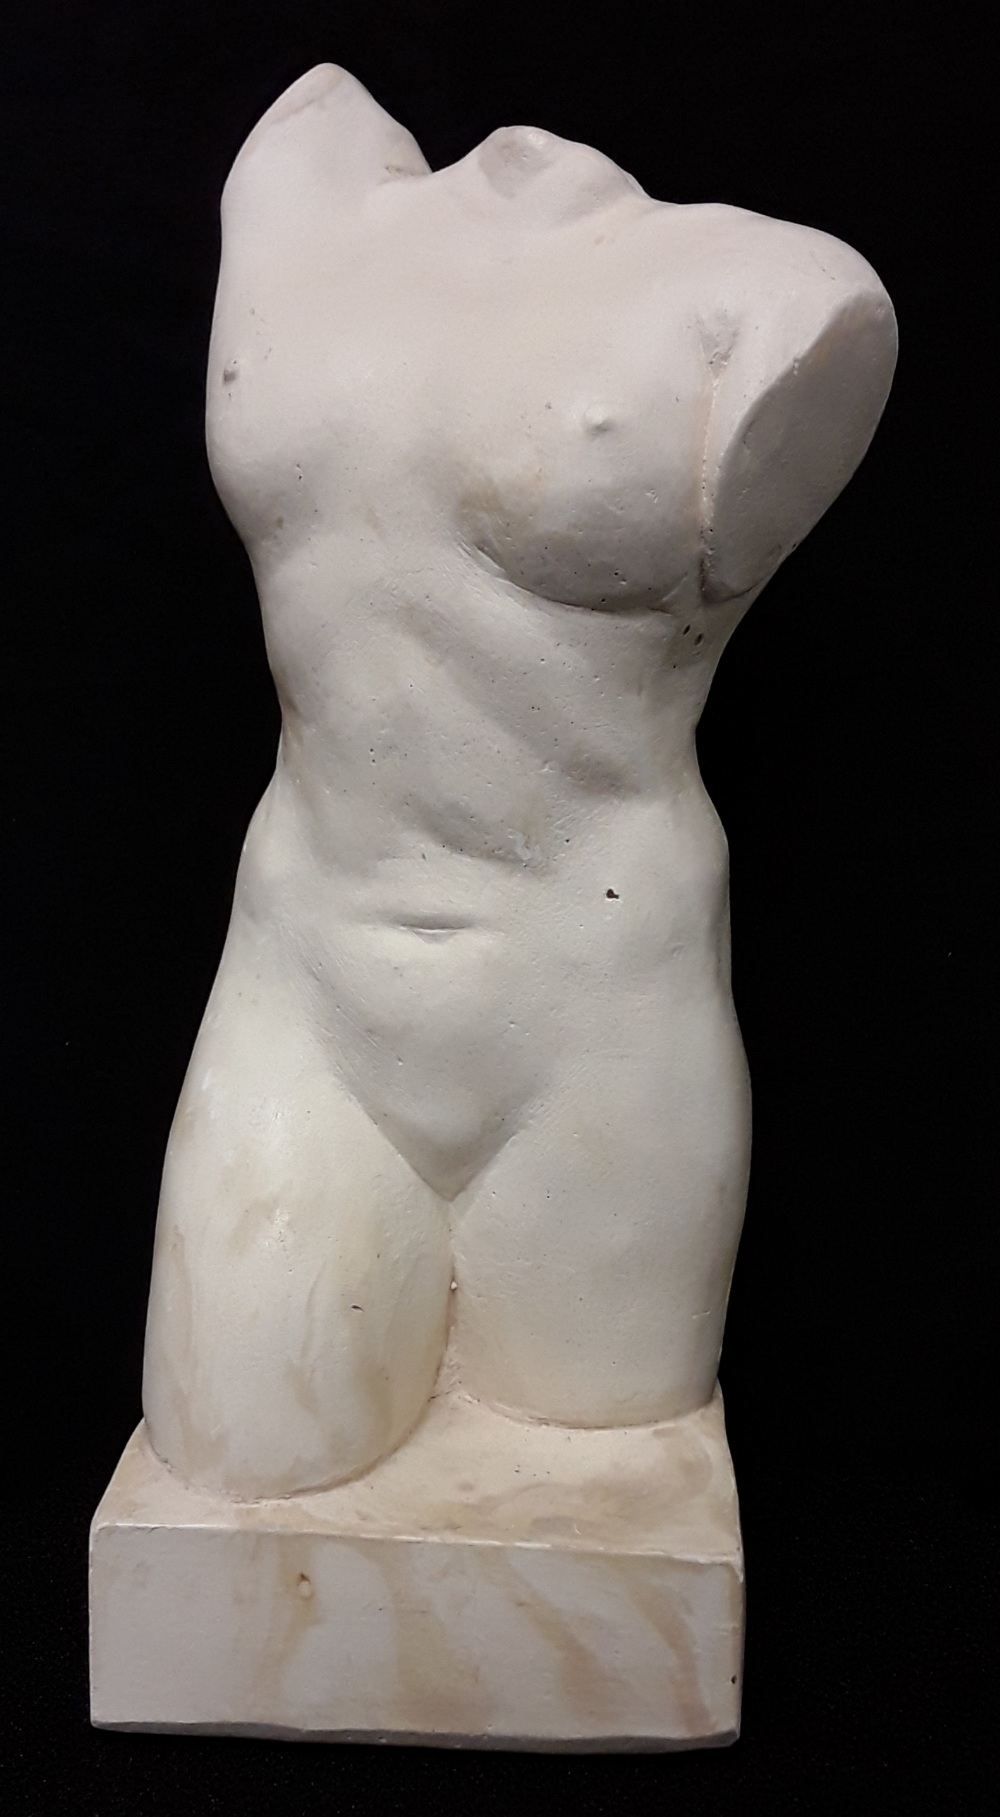 A ceramic sculpture of a female torso.